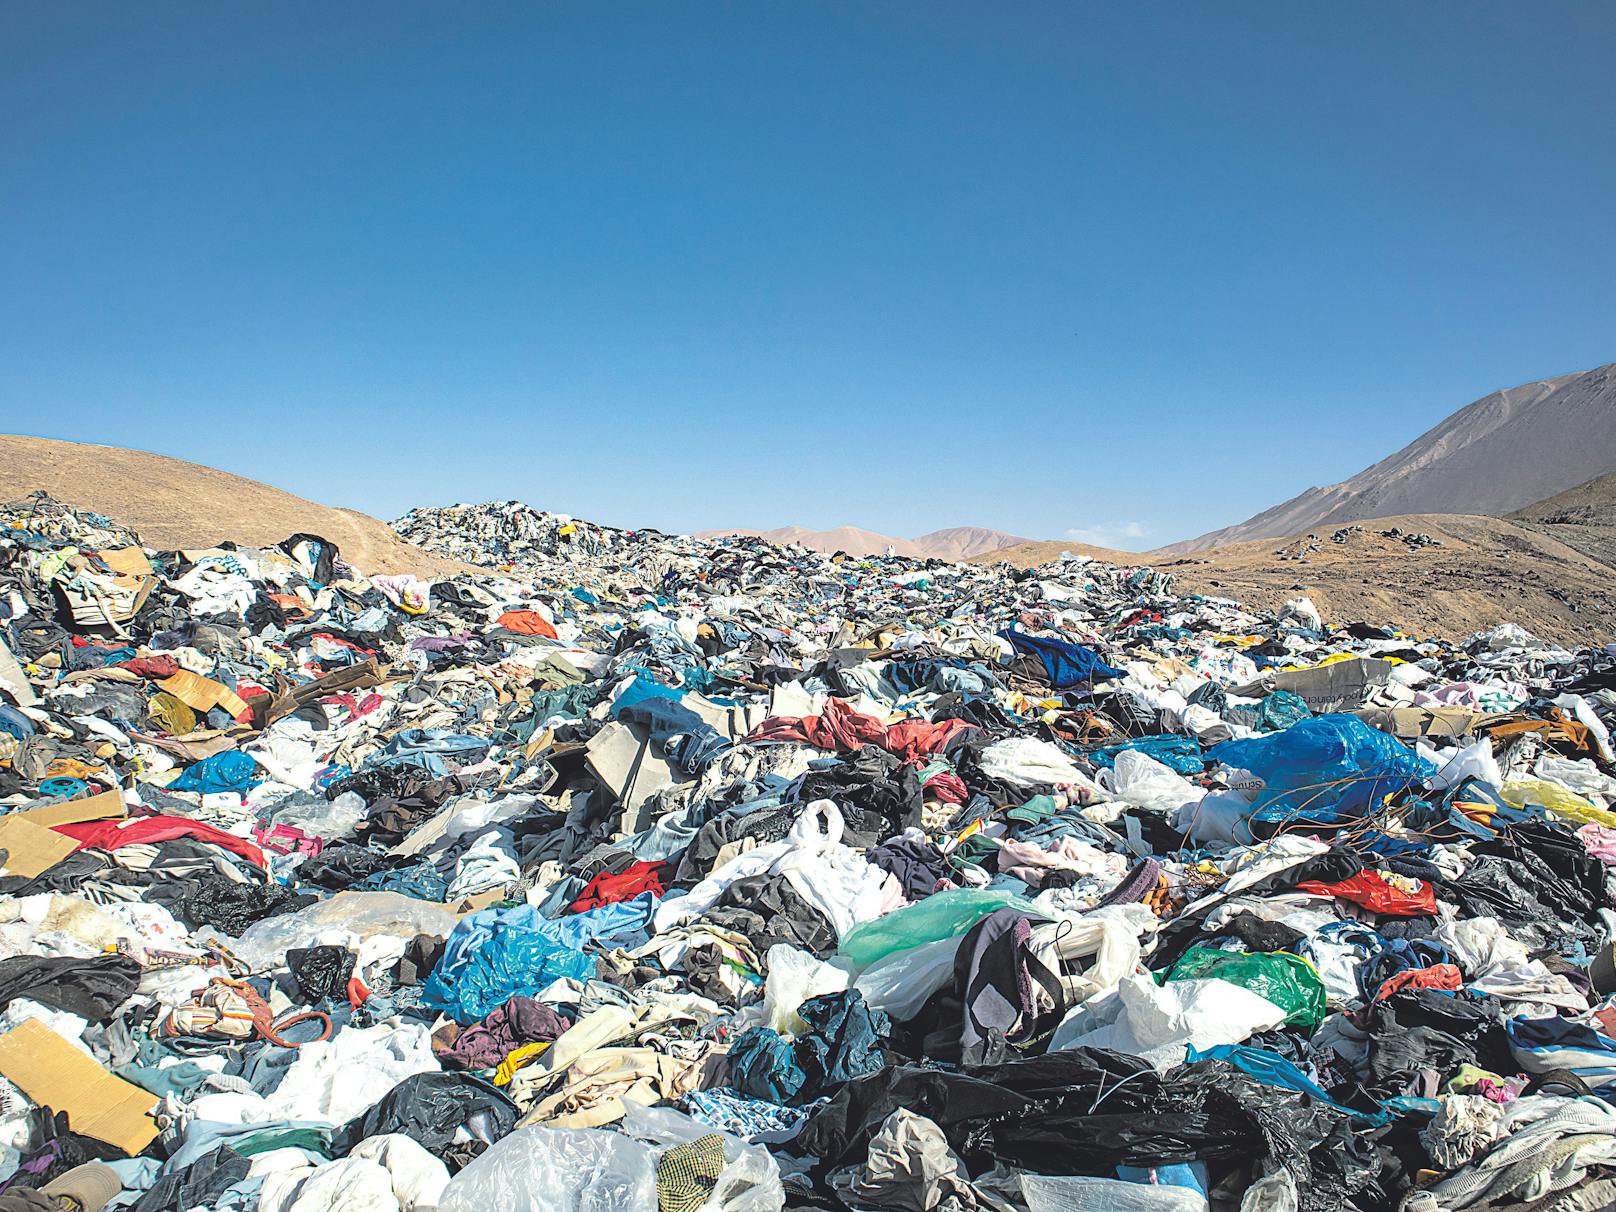 Tonnen an illegal entsorgter Altkleider landen täglich in der Atacama-Wüste in Chile.&nbsp;In der nahe gelegenen Freihandelszone von Iquique kamen im Jahr 2021 bis Oktober 29.178 Tonnen gebrauchte Kleidung an. 40 Prozent davon wurden illegal in der Wüste entsorgt.<br>